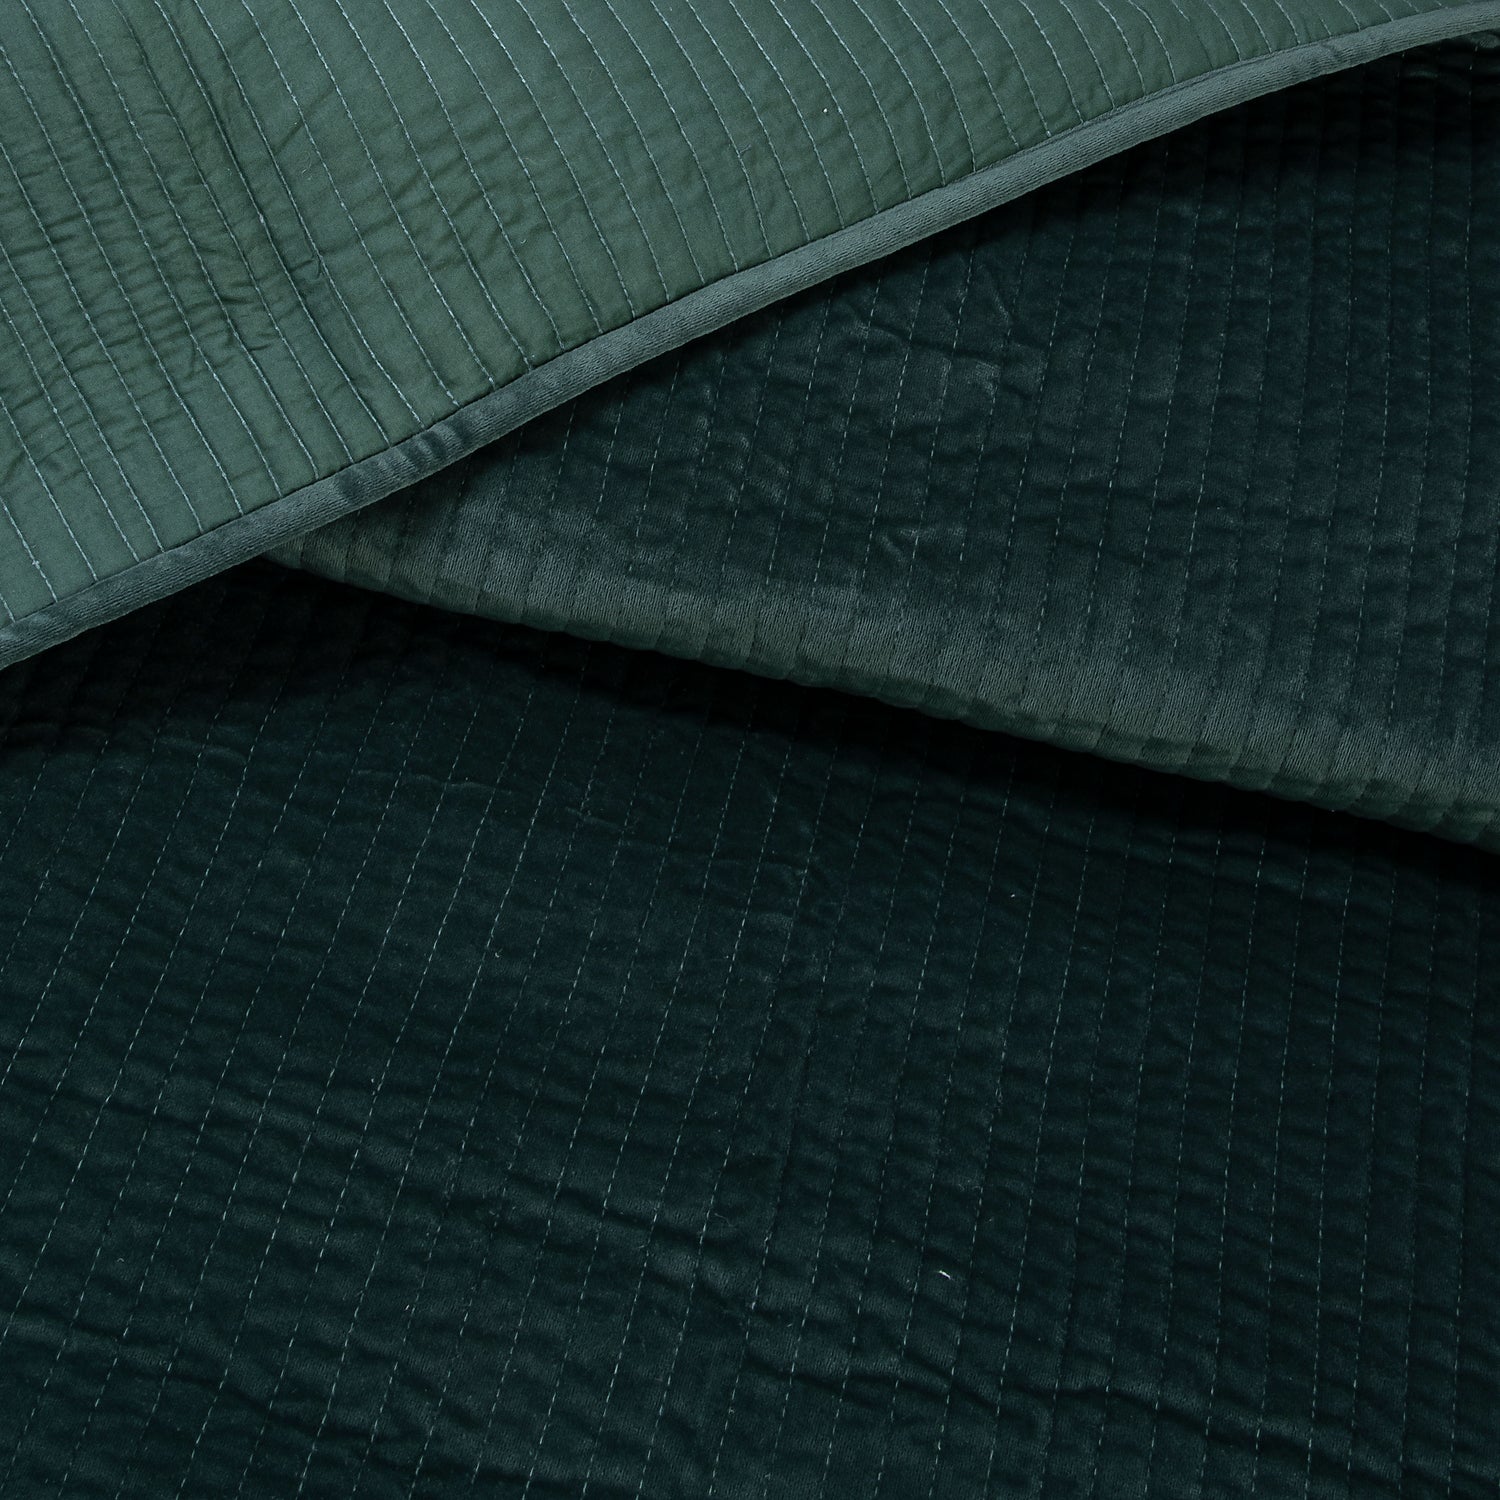 Handmade Luxury Green Soft Velvet Blanket Online